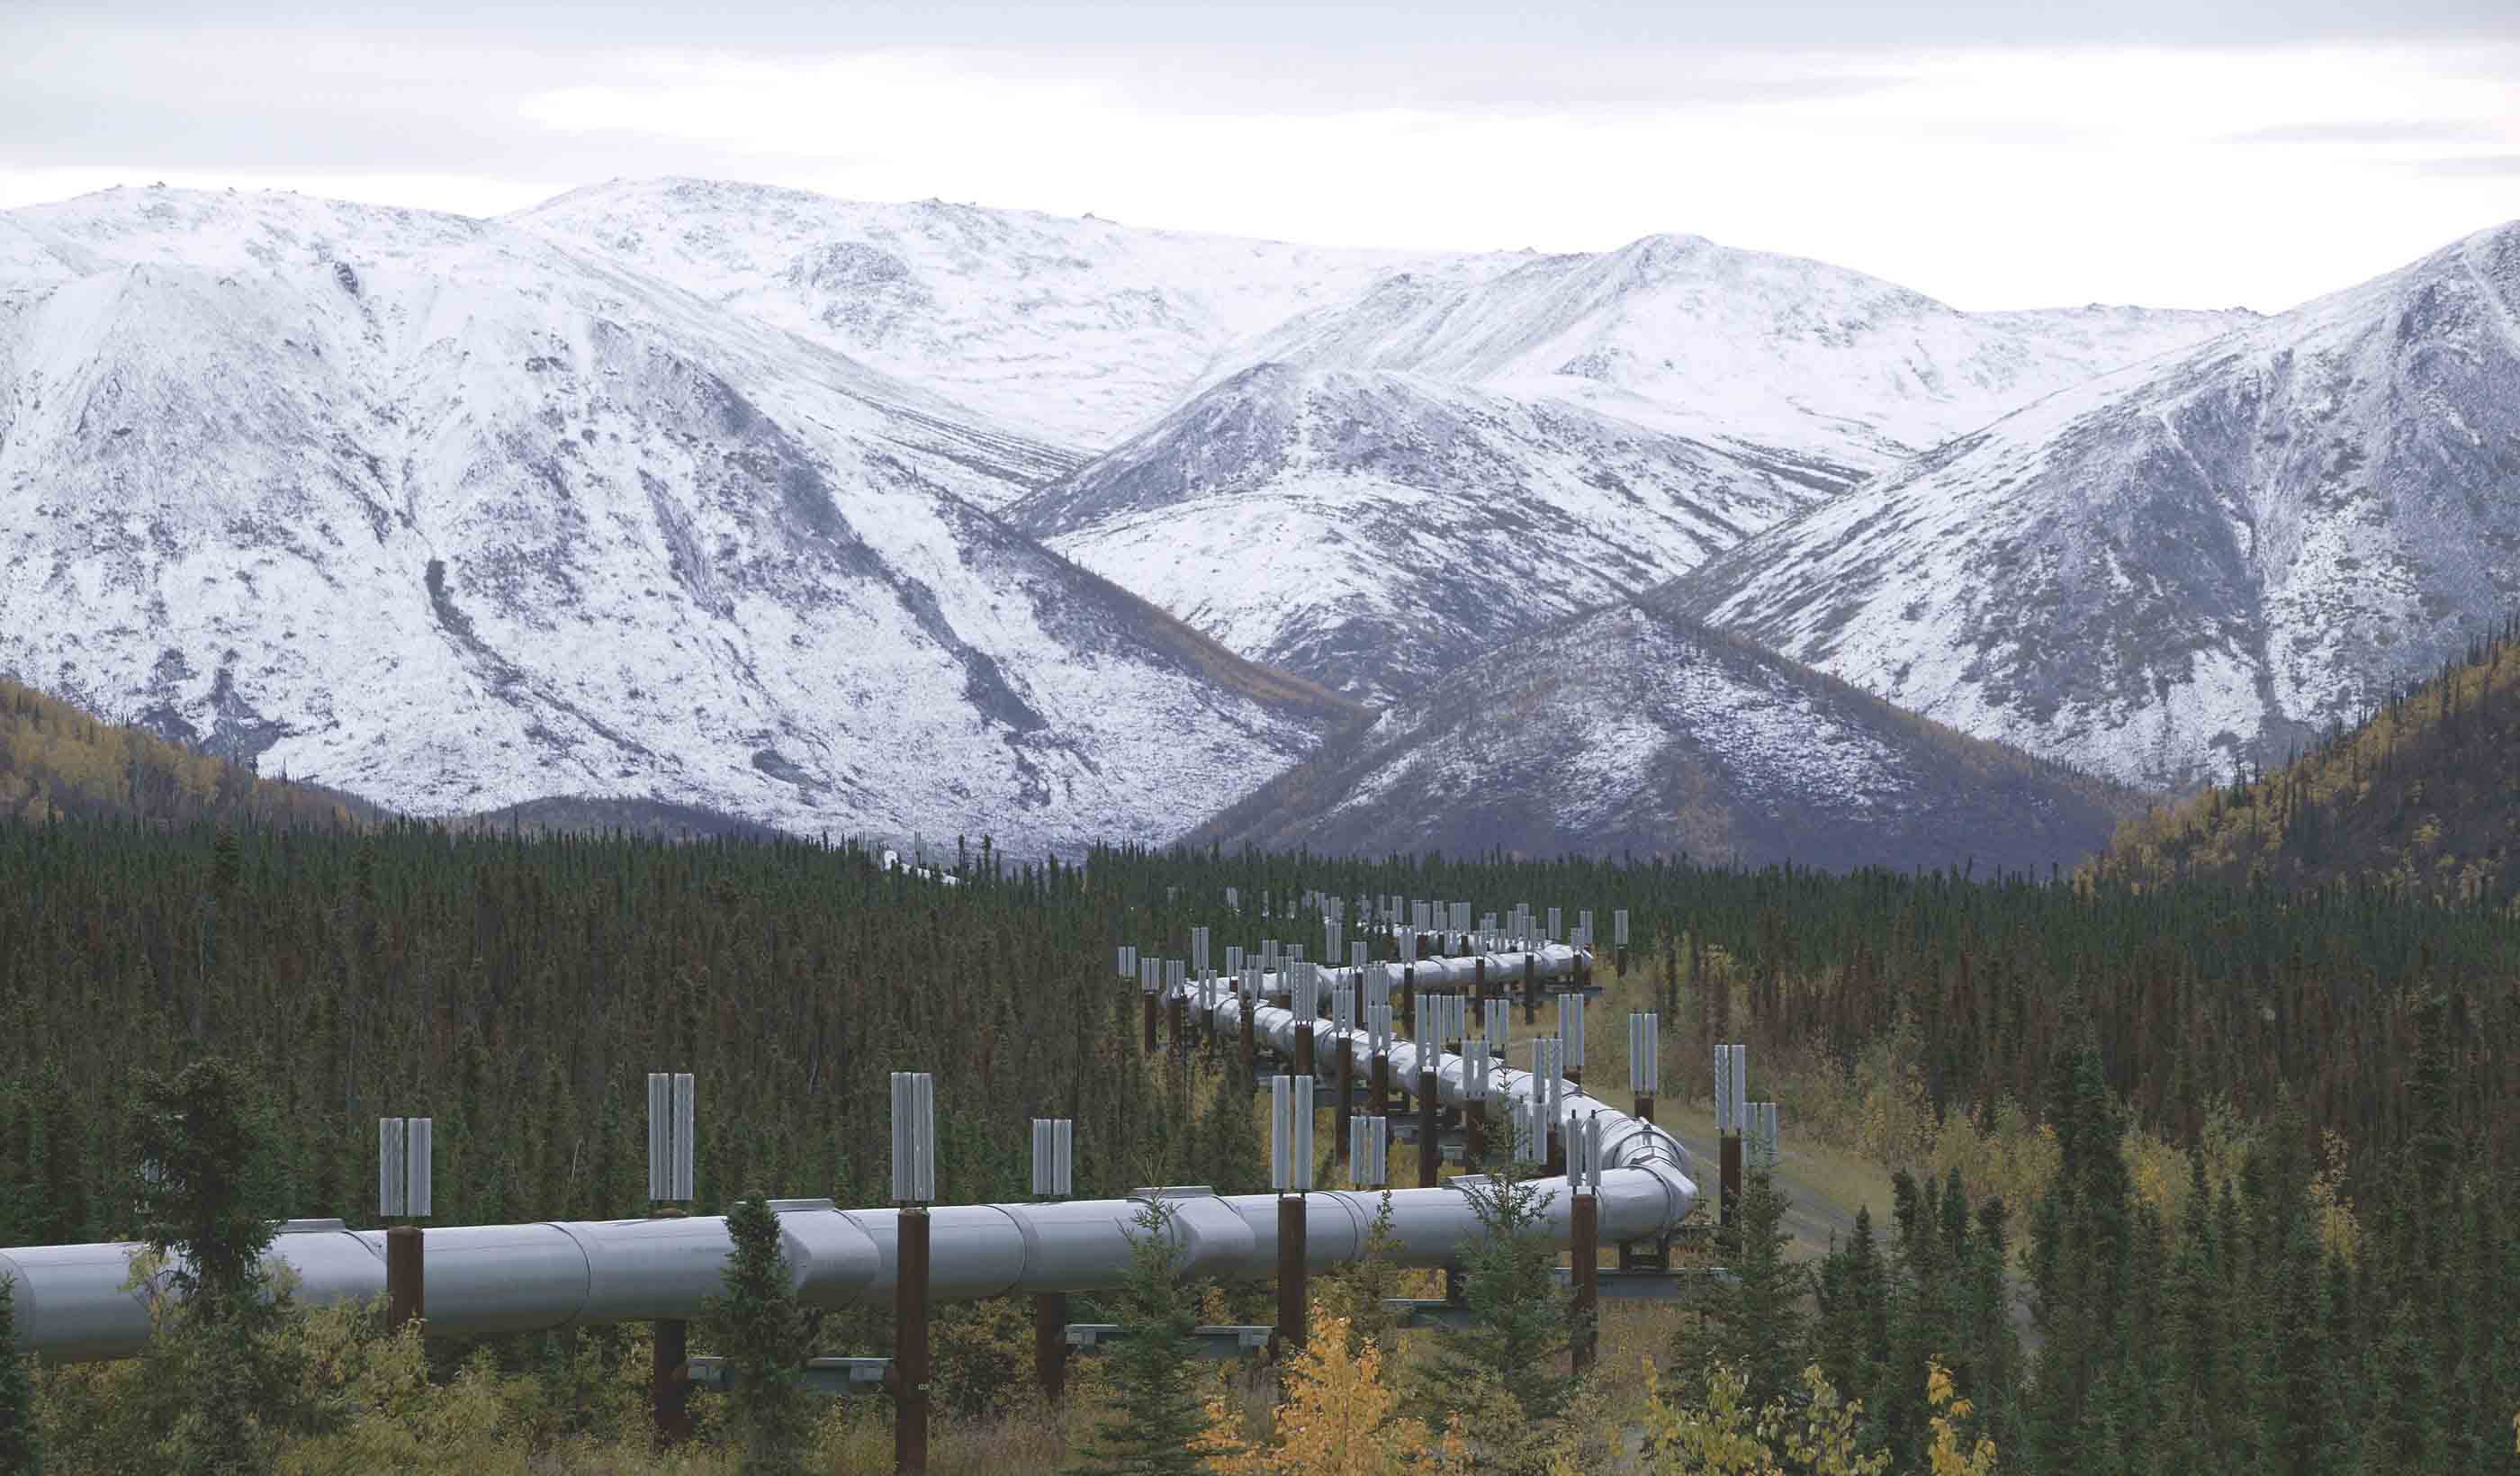 Trans Alaska Pipeline System